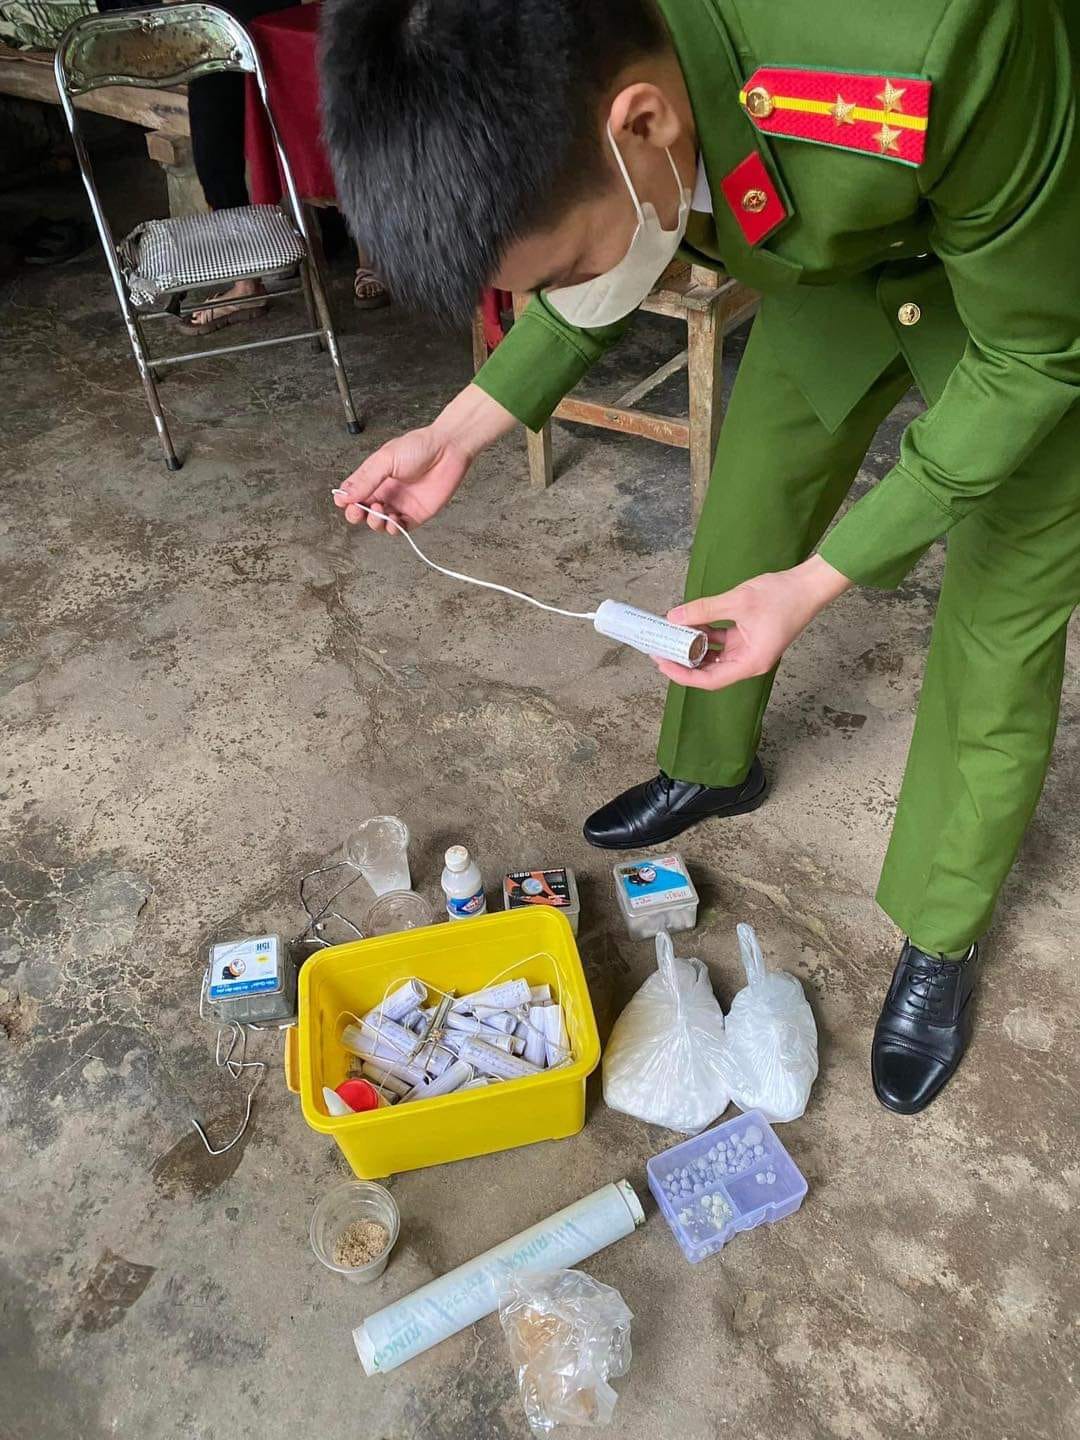 Nhóm học sinh ở Hà Tĩnh lên mạng mua hóa chất chế tạo pháo nổ- Ảnh 2.